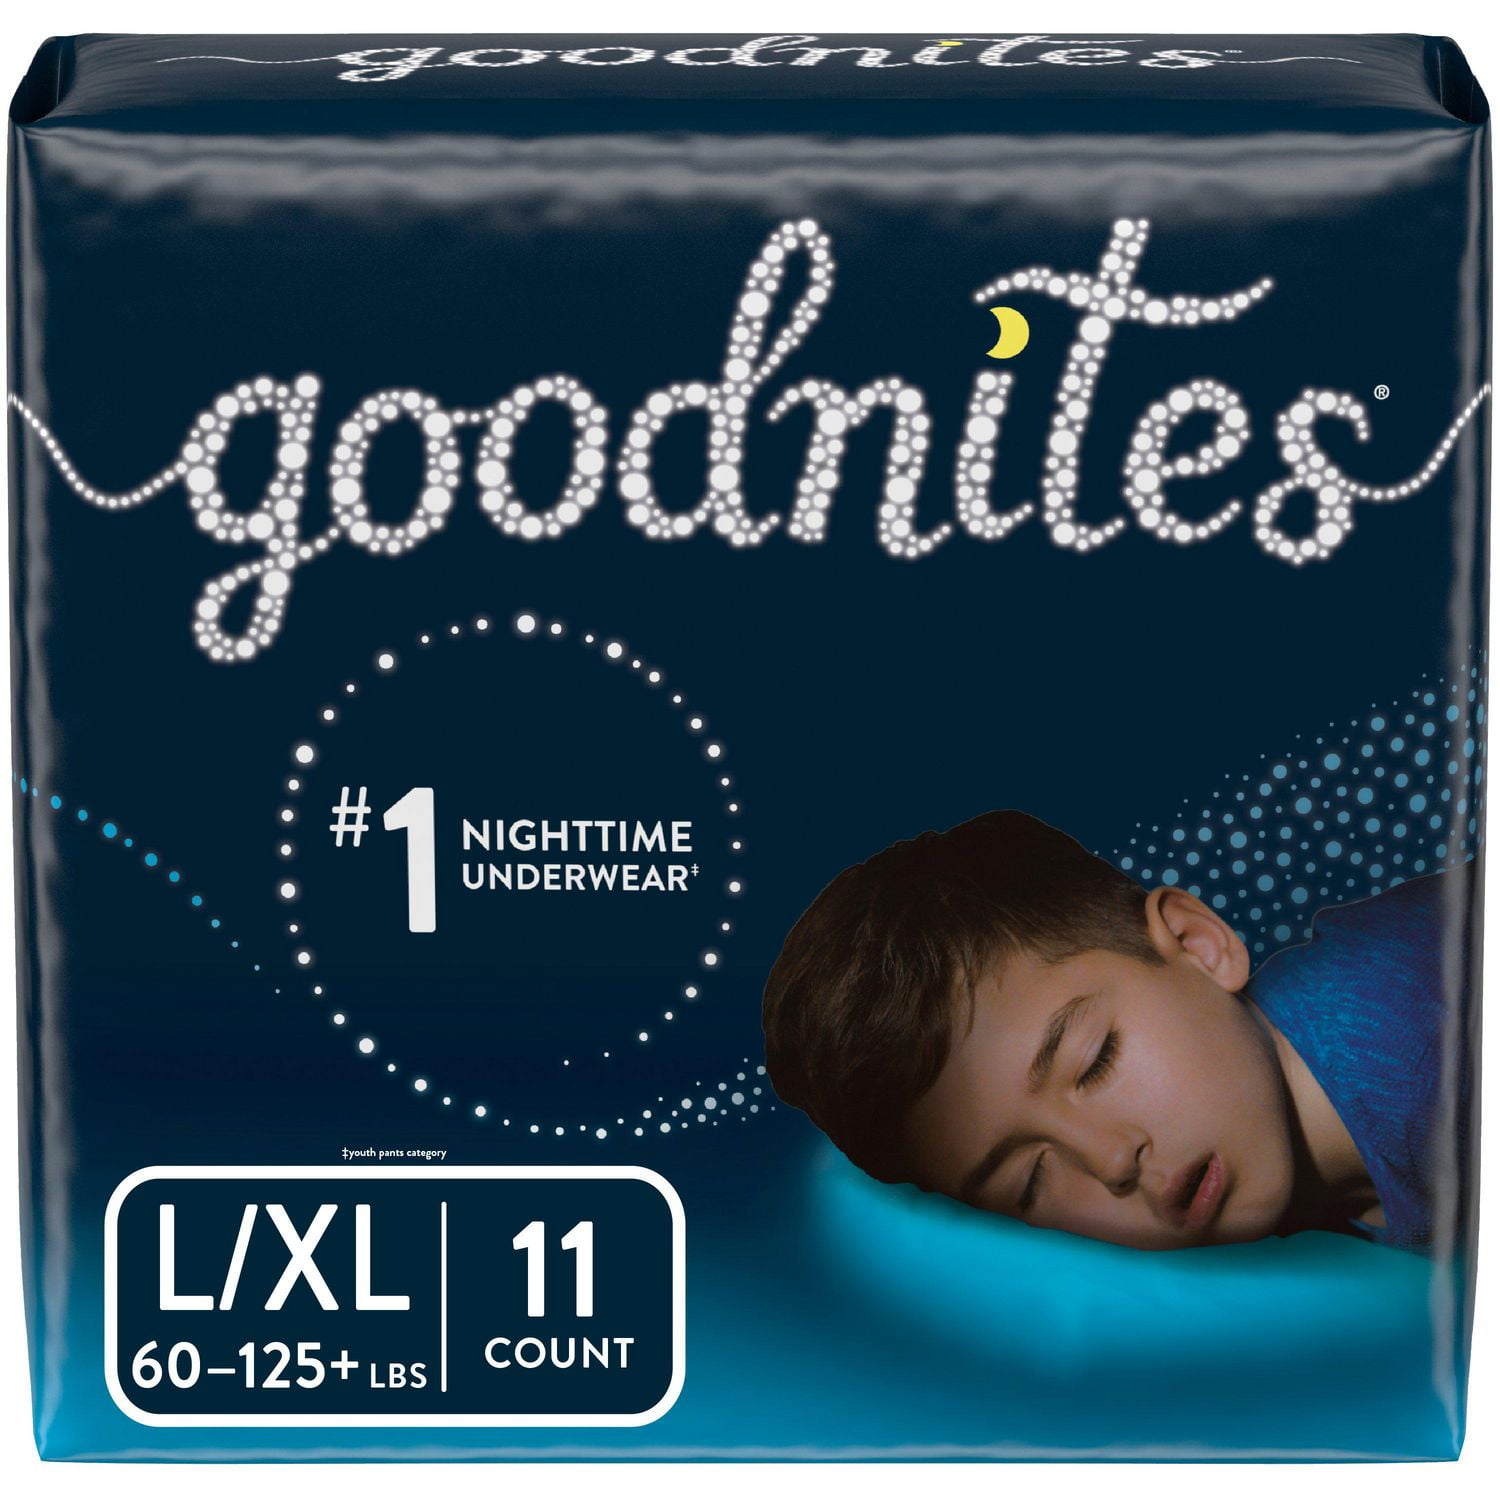 Goodnites Boys' Nighttime Bedwetting Underwear, Algeria